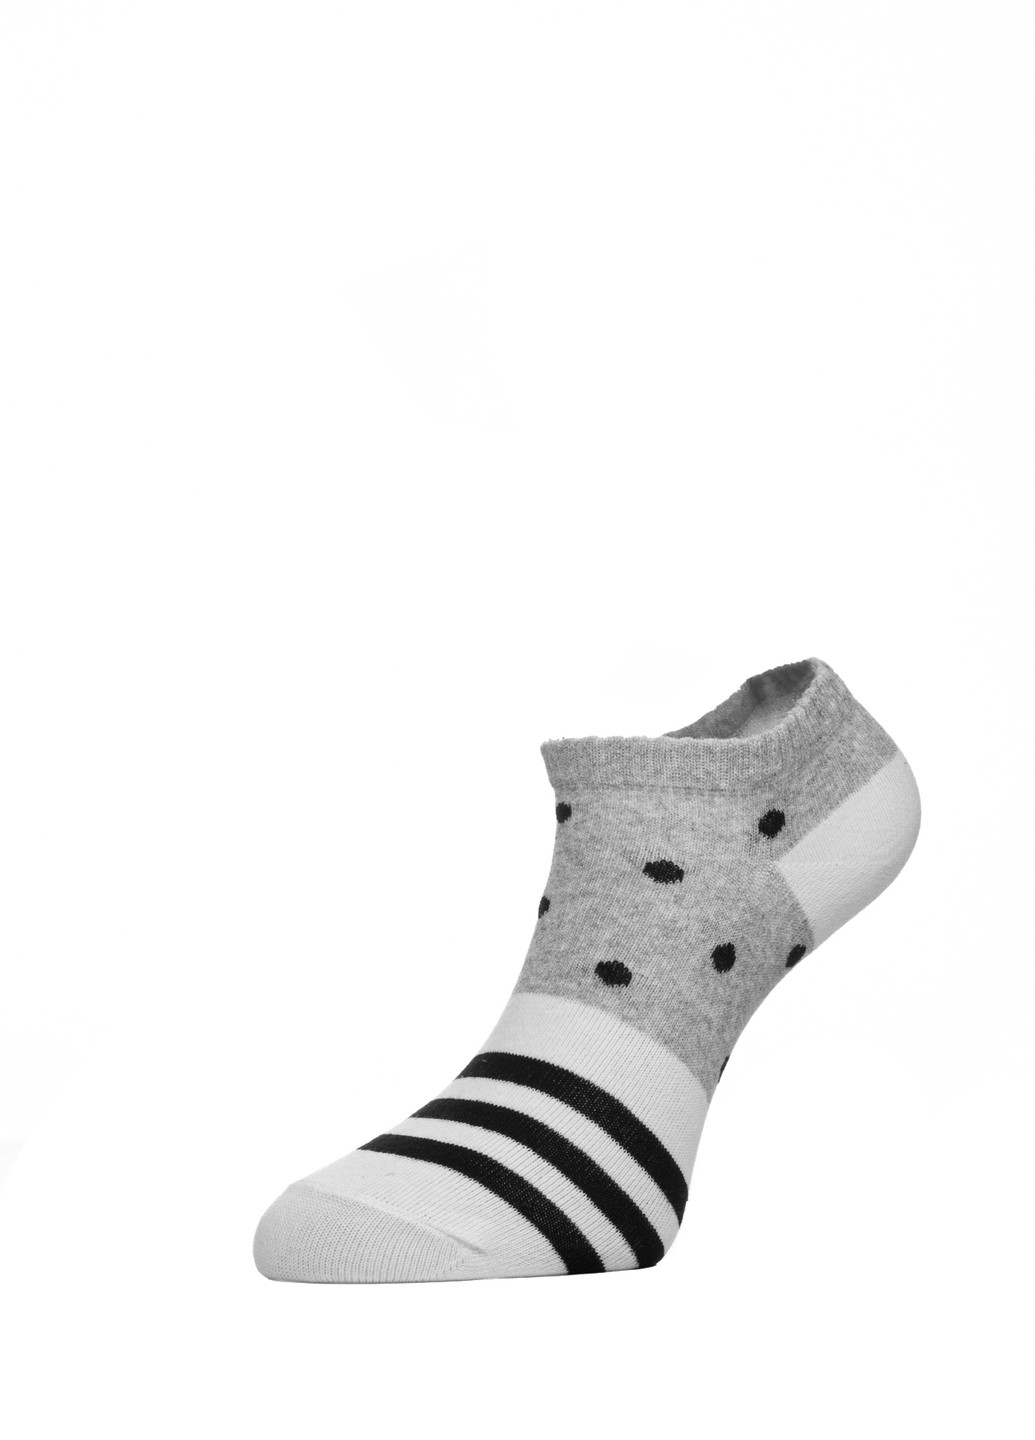 Шкарпетки жін. арт., р.25, 408 сірий-білий-чорний CHOBOT 50s-68 (225542662)